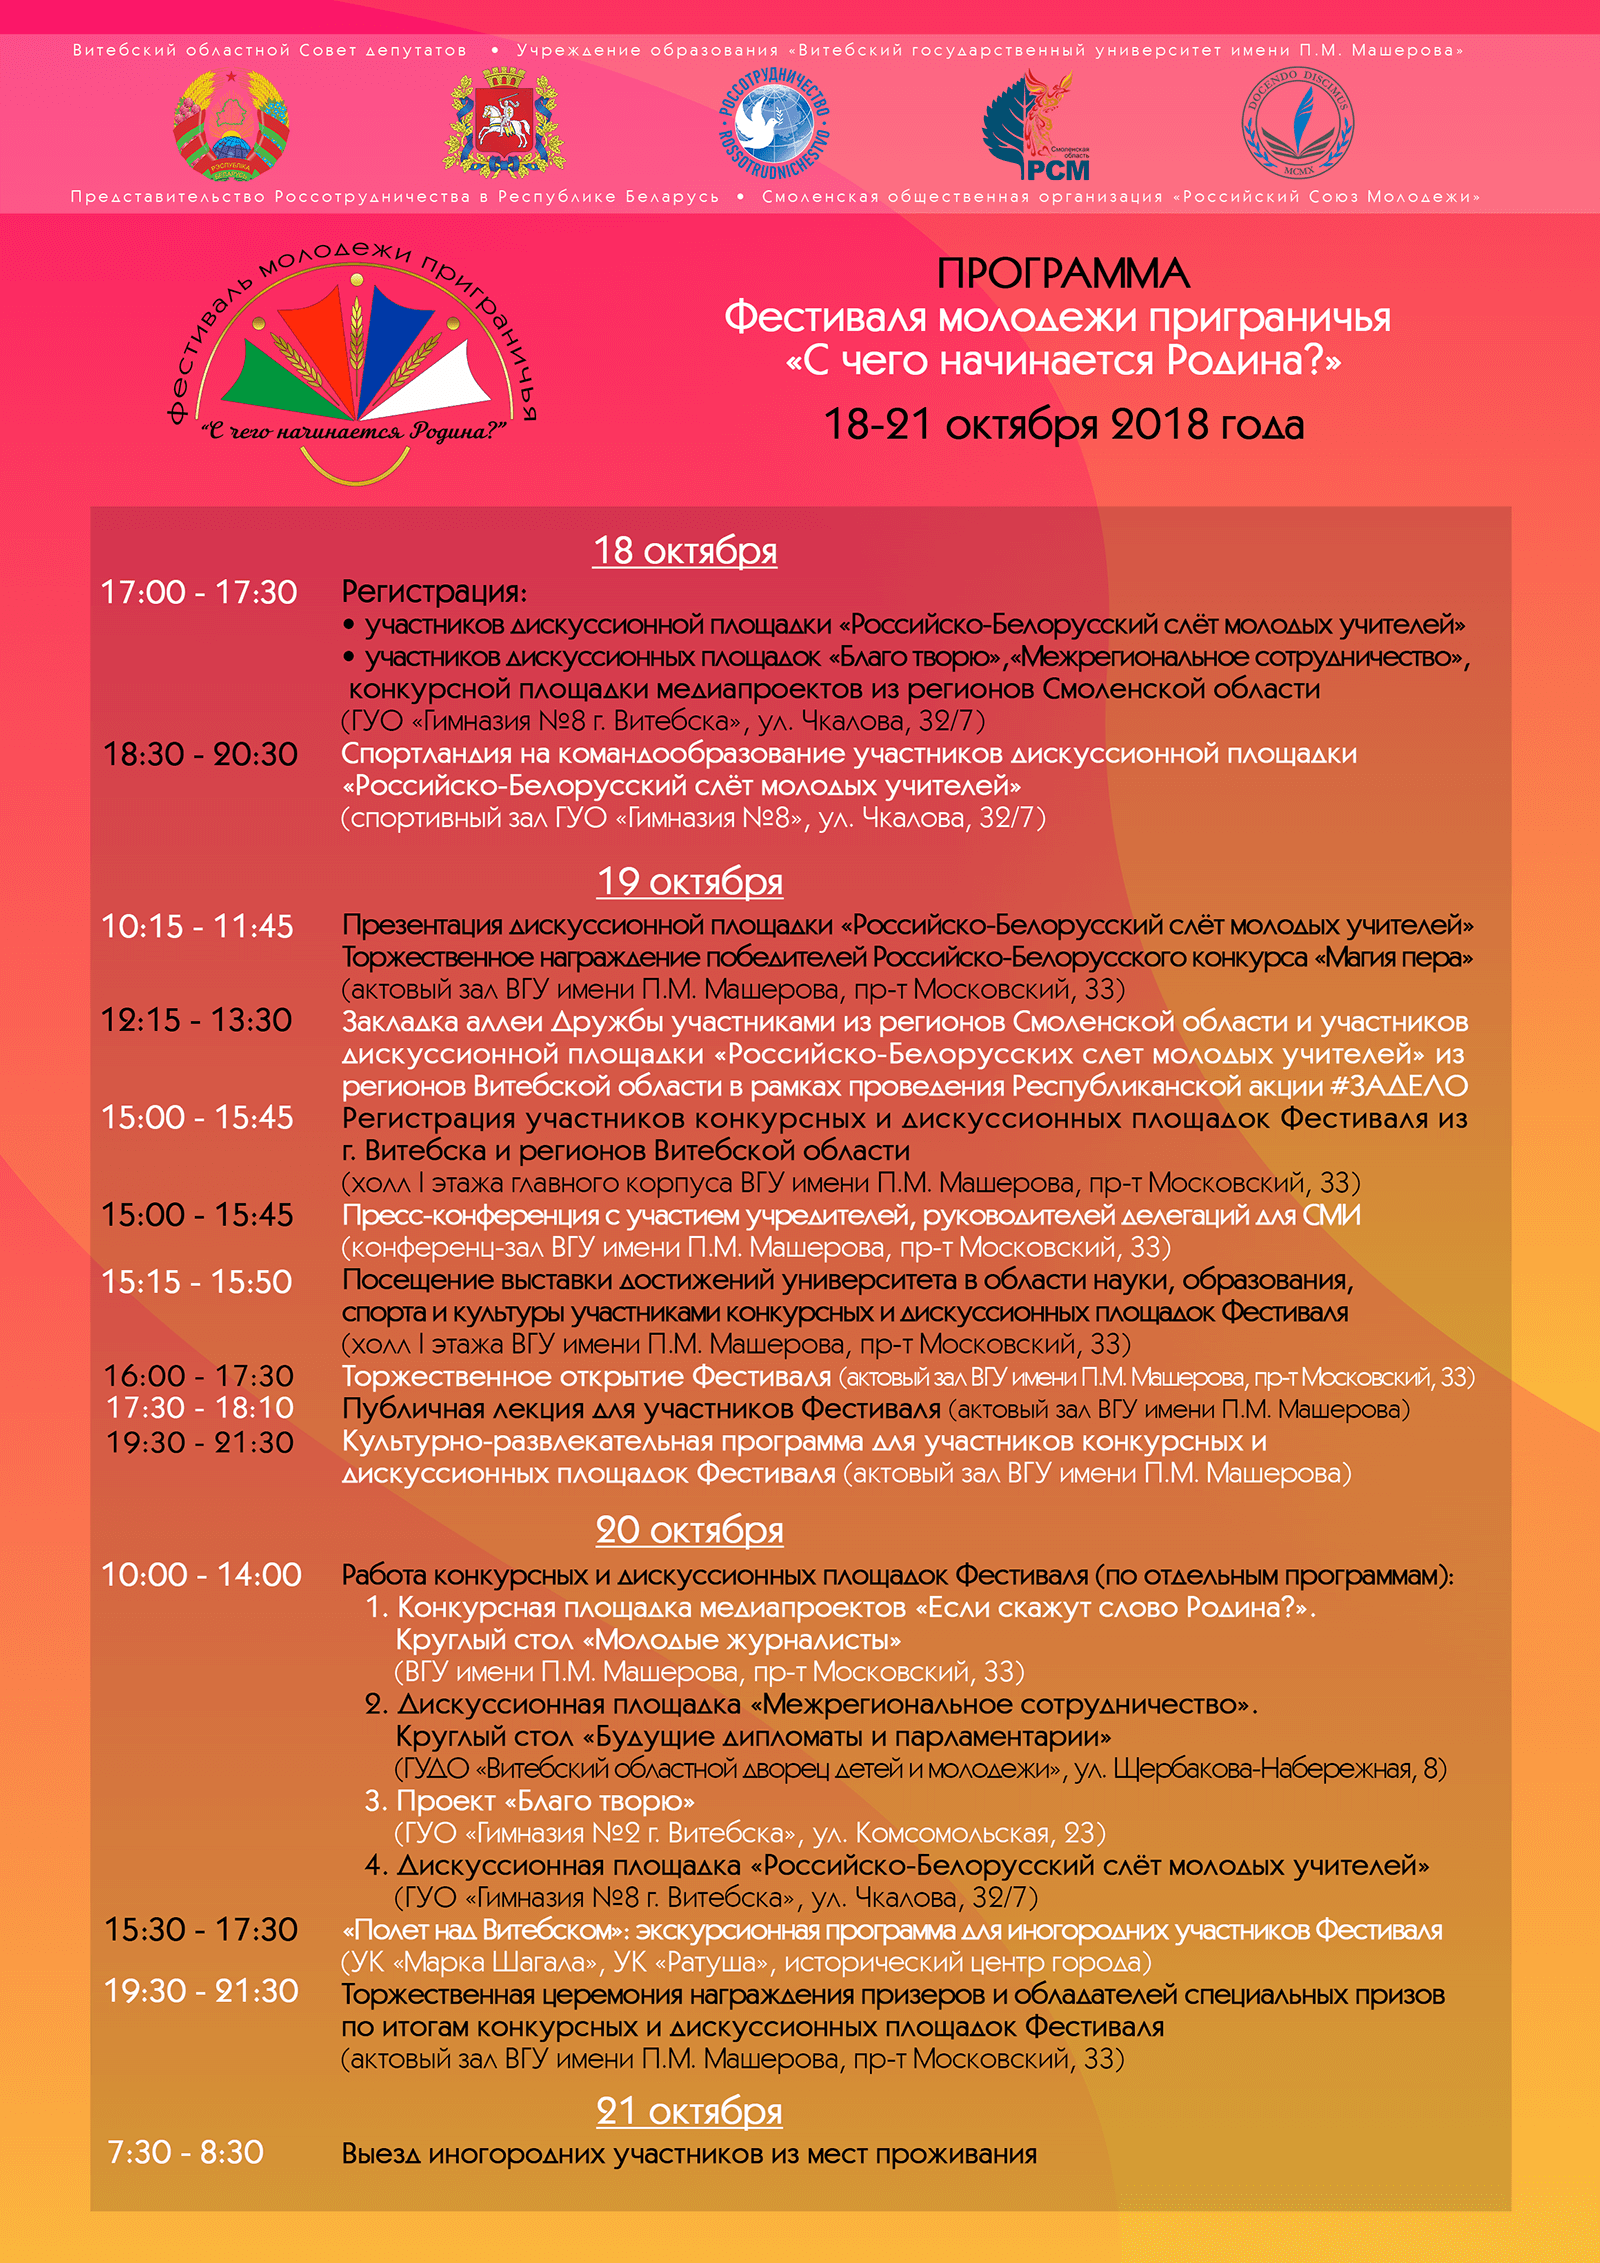 Programma festivalya dlya sayta 2 1